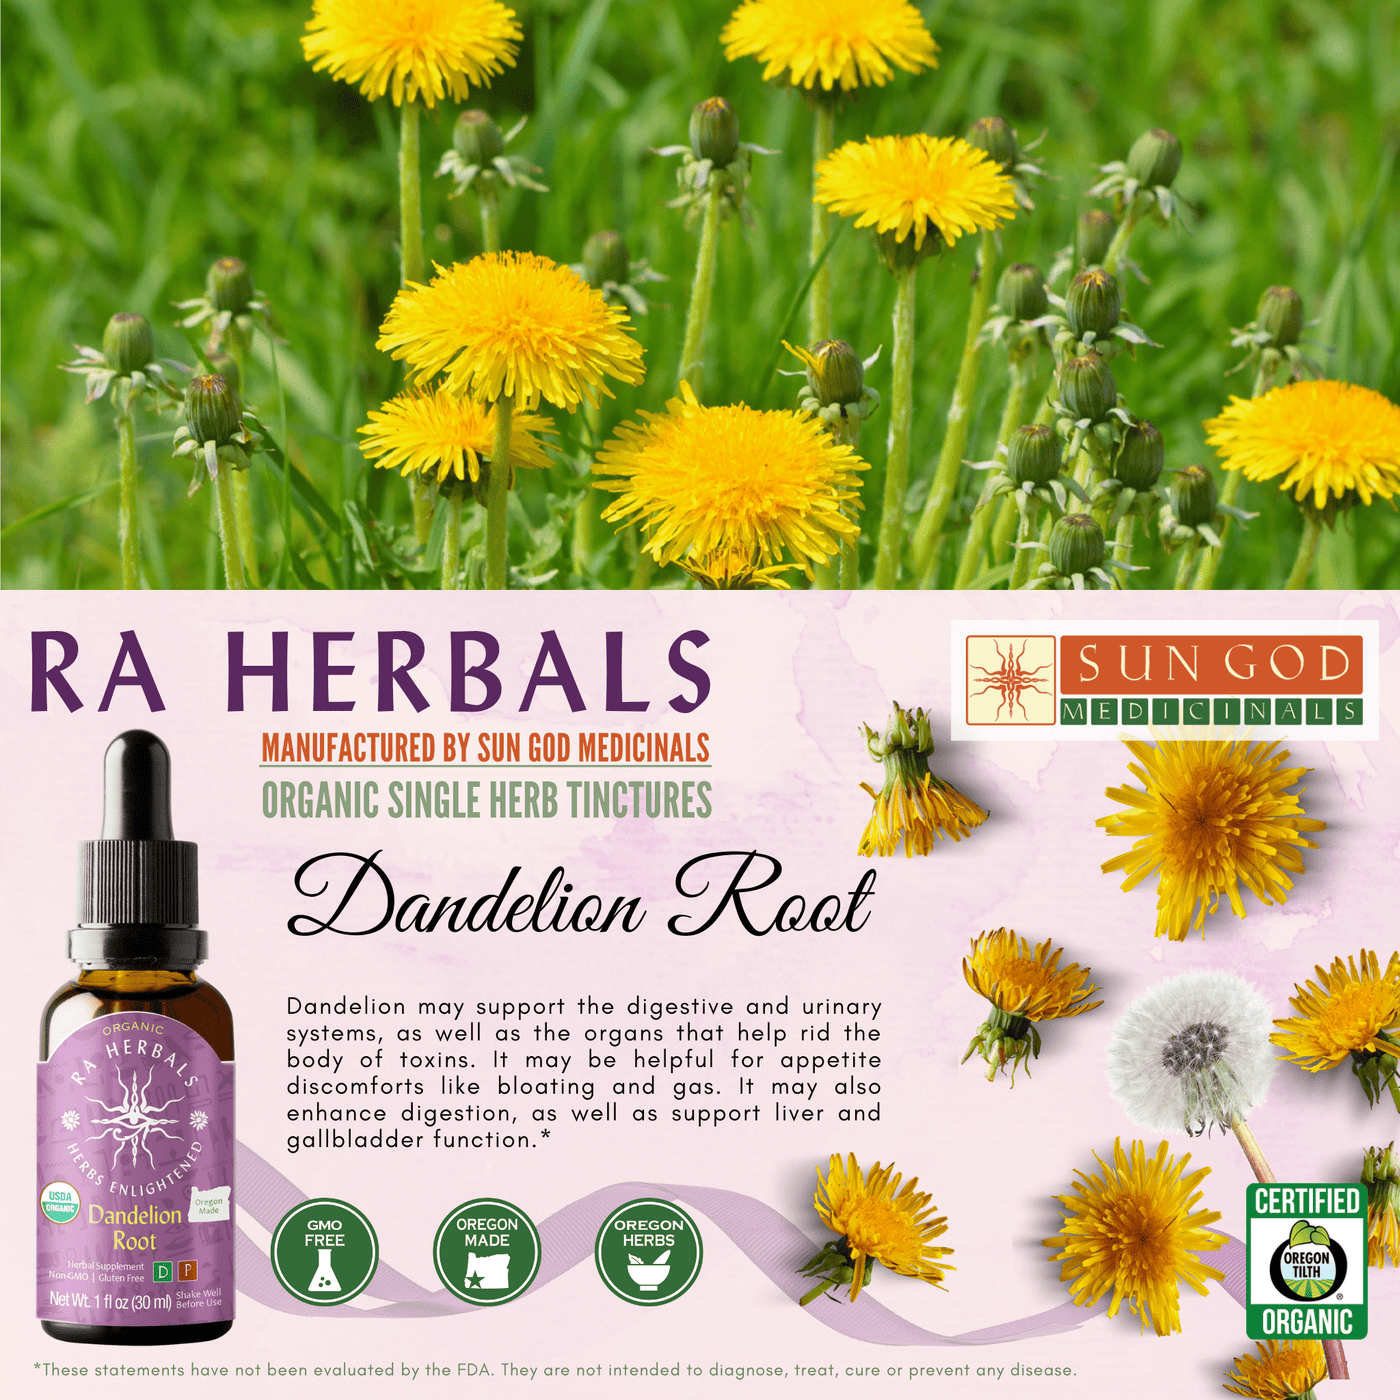 Ra Herbals Certified Organic Dandelion Root Tincture - Sun God Medicinals